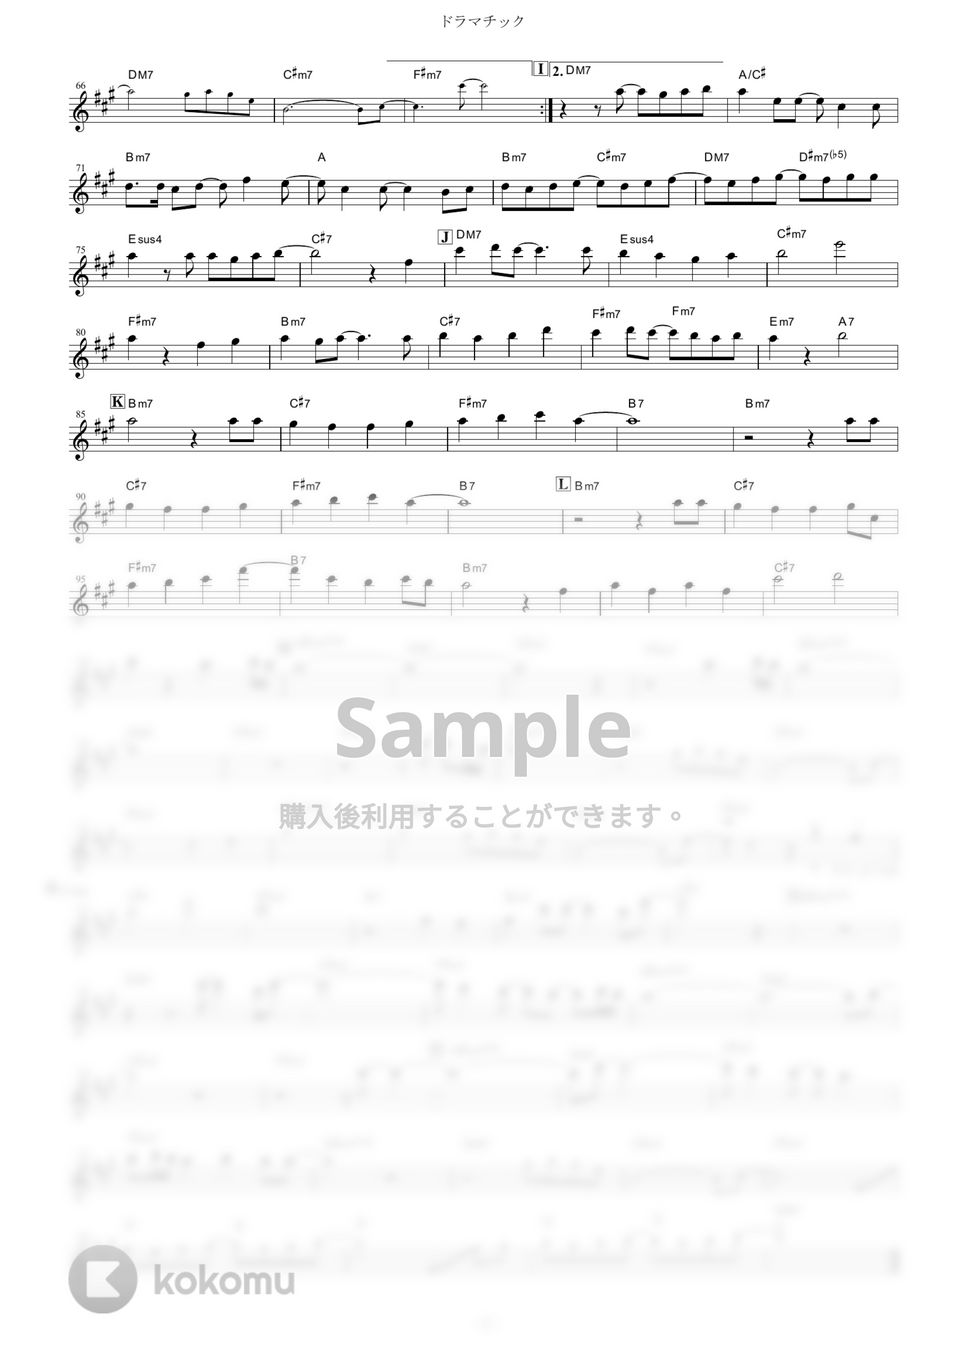 YUKI - ドラマチック (『ハチミツとクローバー』 / in Bb) by muta-sax